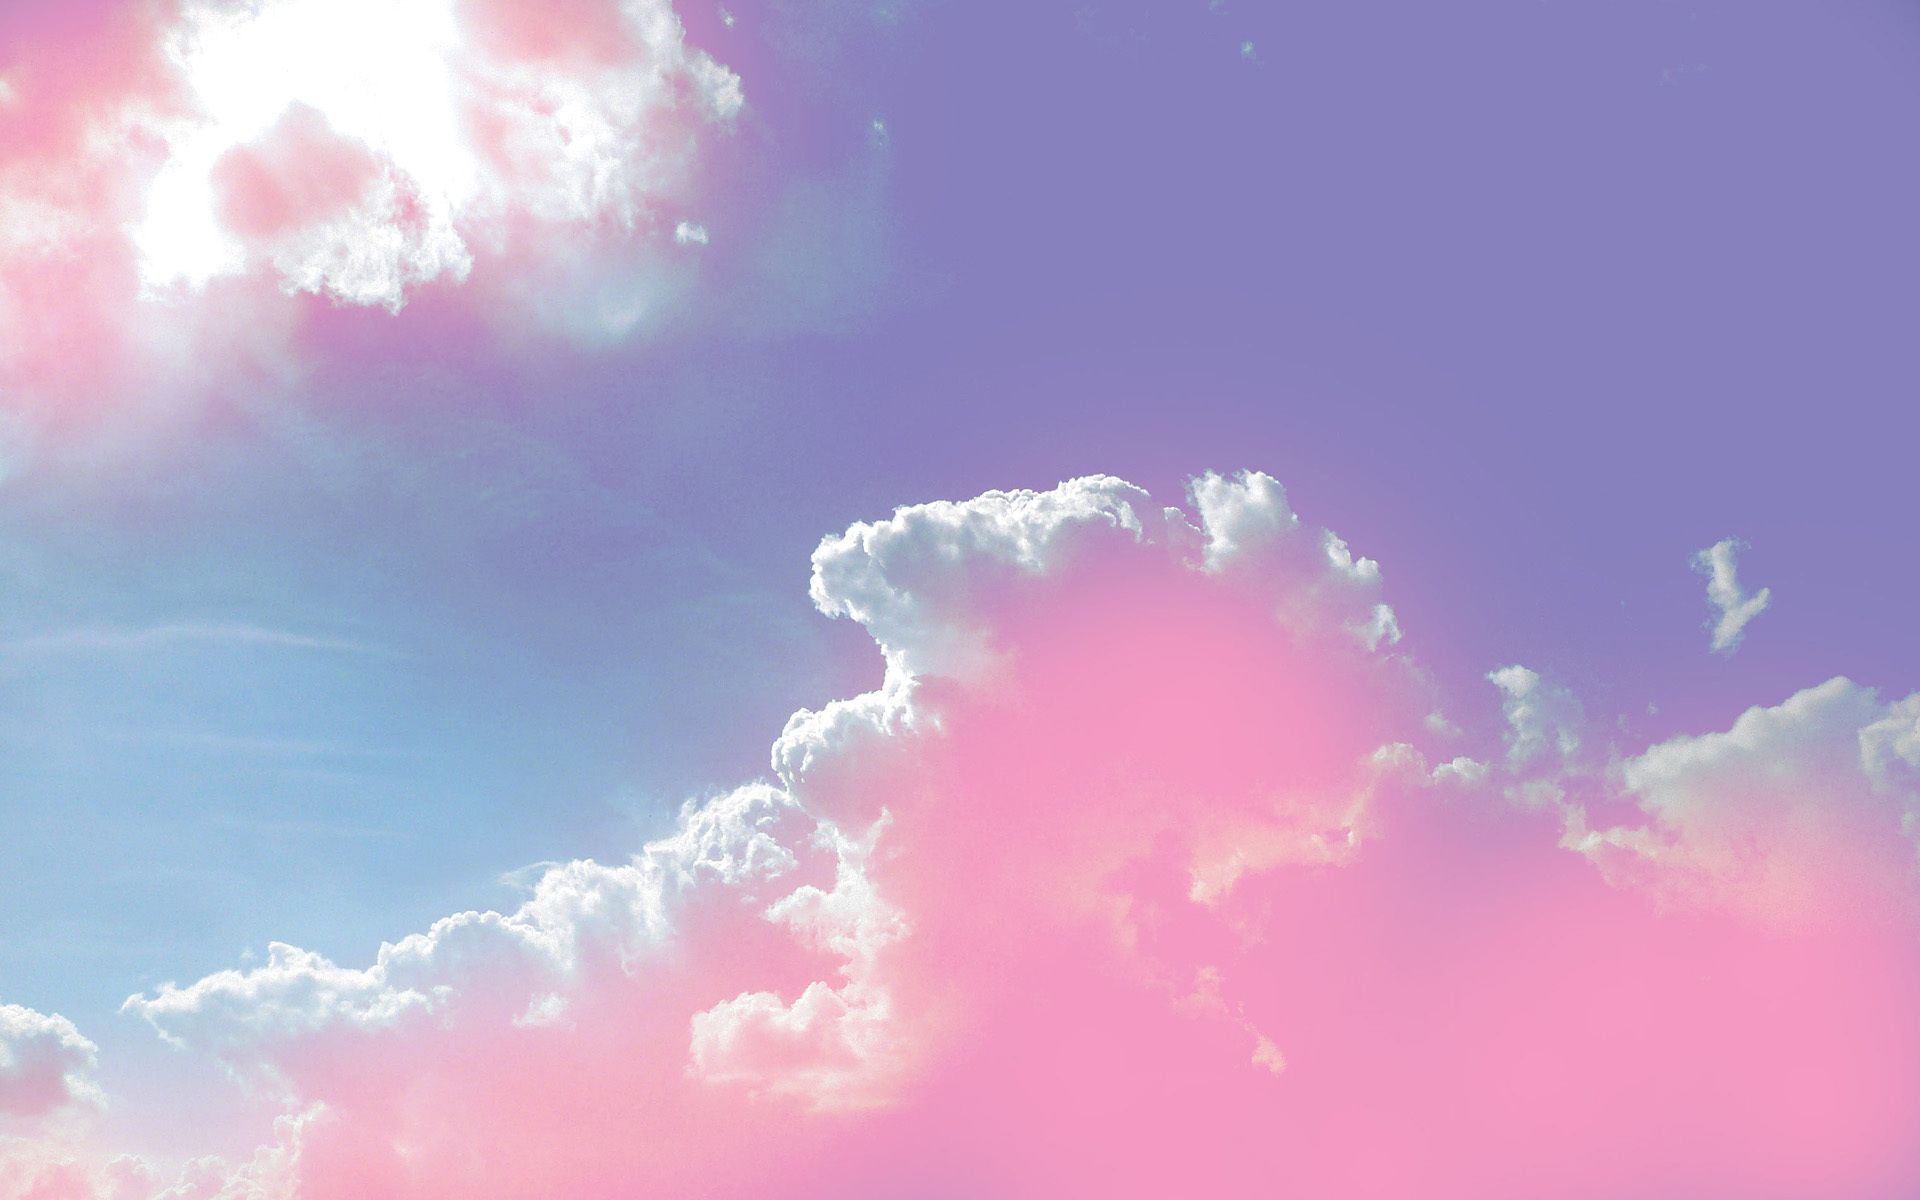 sfondi e sfondi,cielo,nube,giorno,rosa,blu